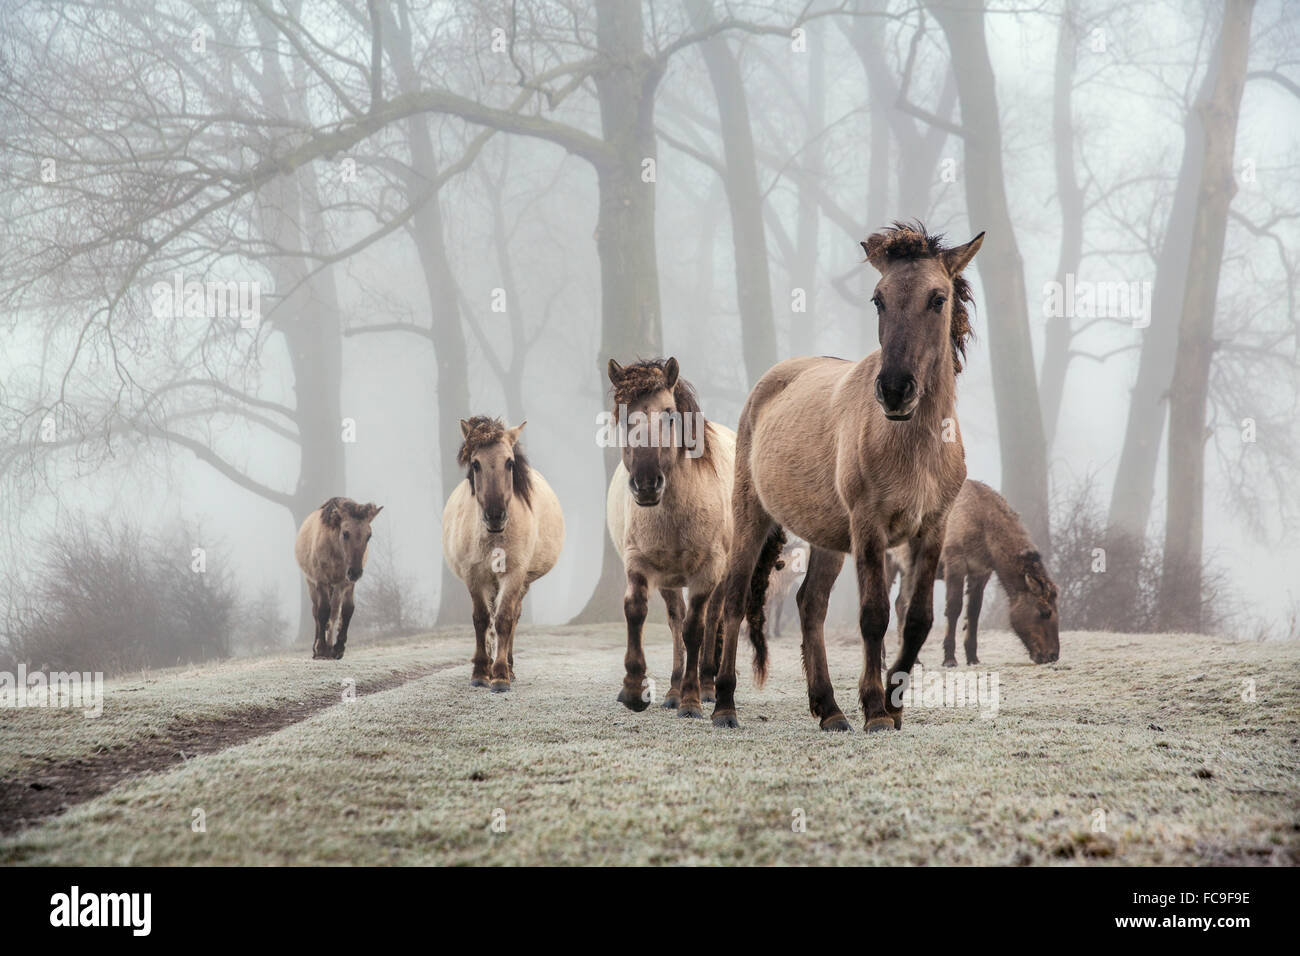 Netherlands, Ooij, Ooijpolder, Nature Reserve Gelderse Poort. Area called Bisonbaai. Winter. Konik horses Stock Photo